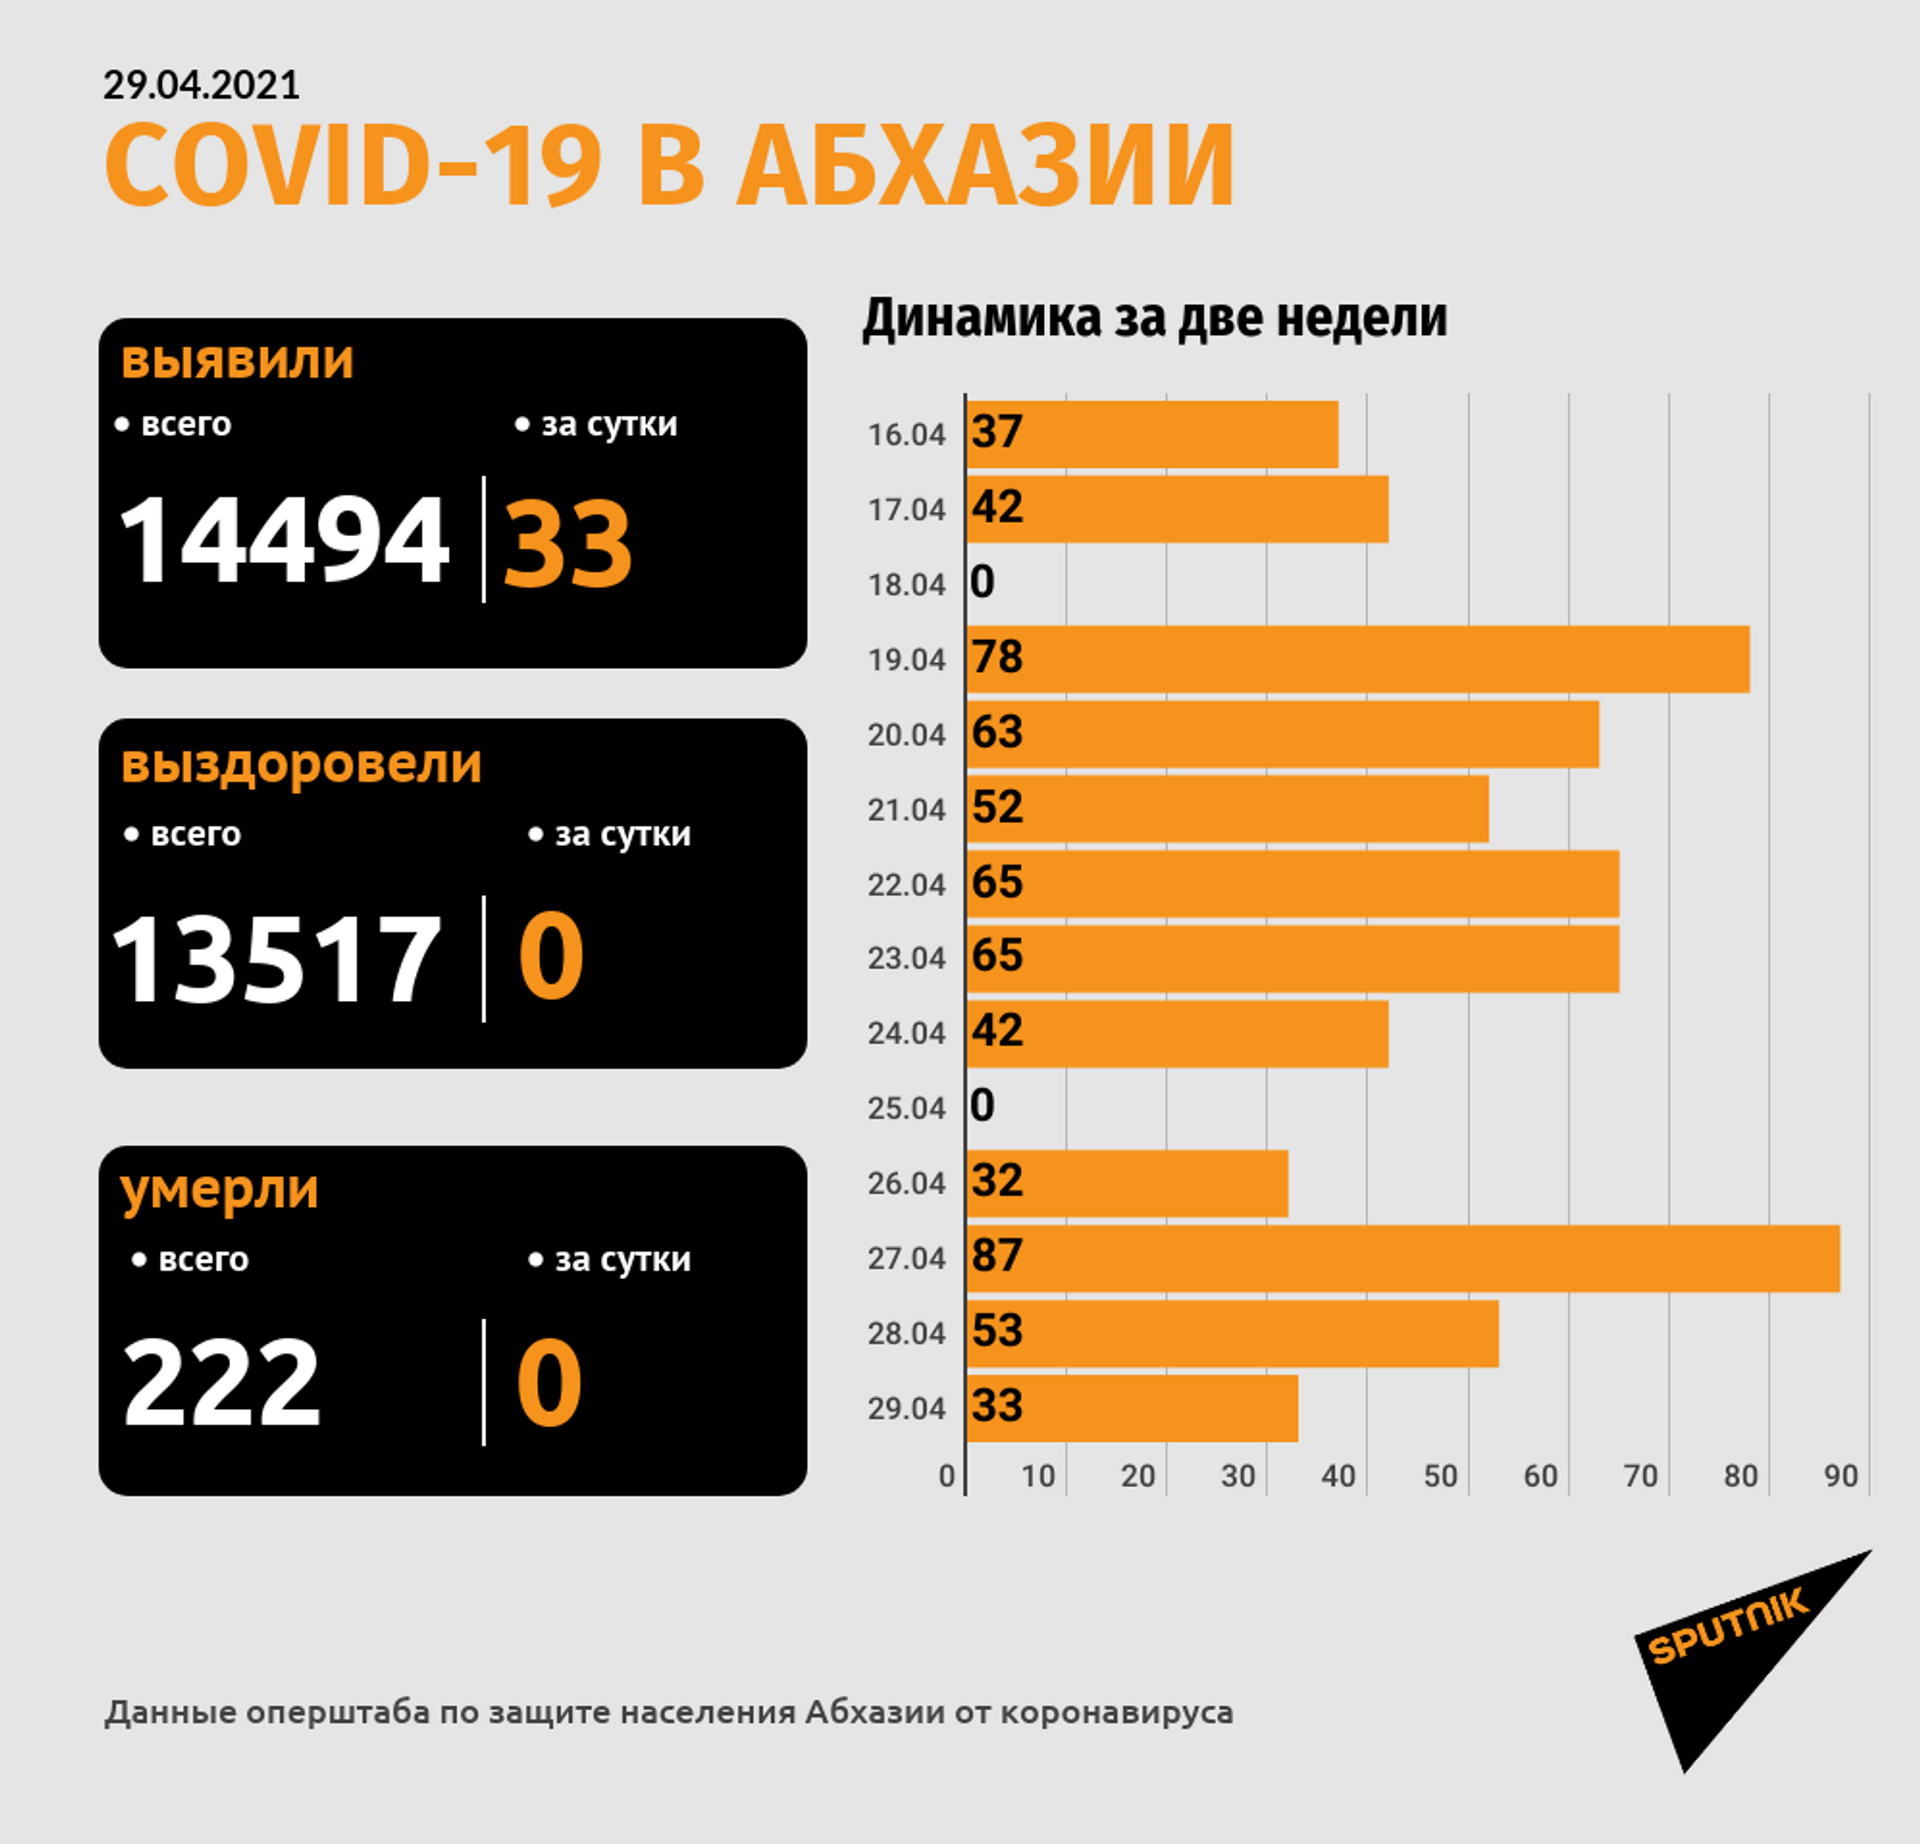 Еще 33 новых случая COVID-19 зафиксировано в Абхазии за сутки - Sputnik Абхазия, 1920, 29.04.2021